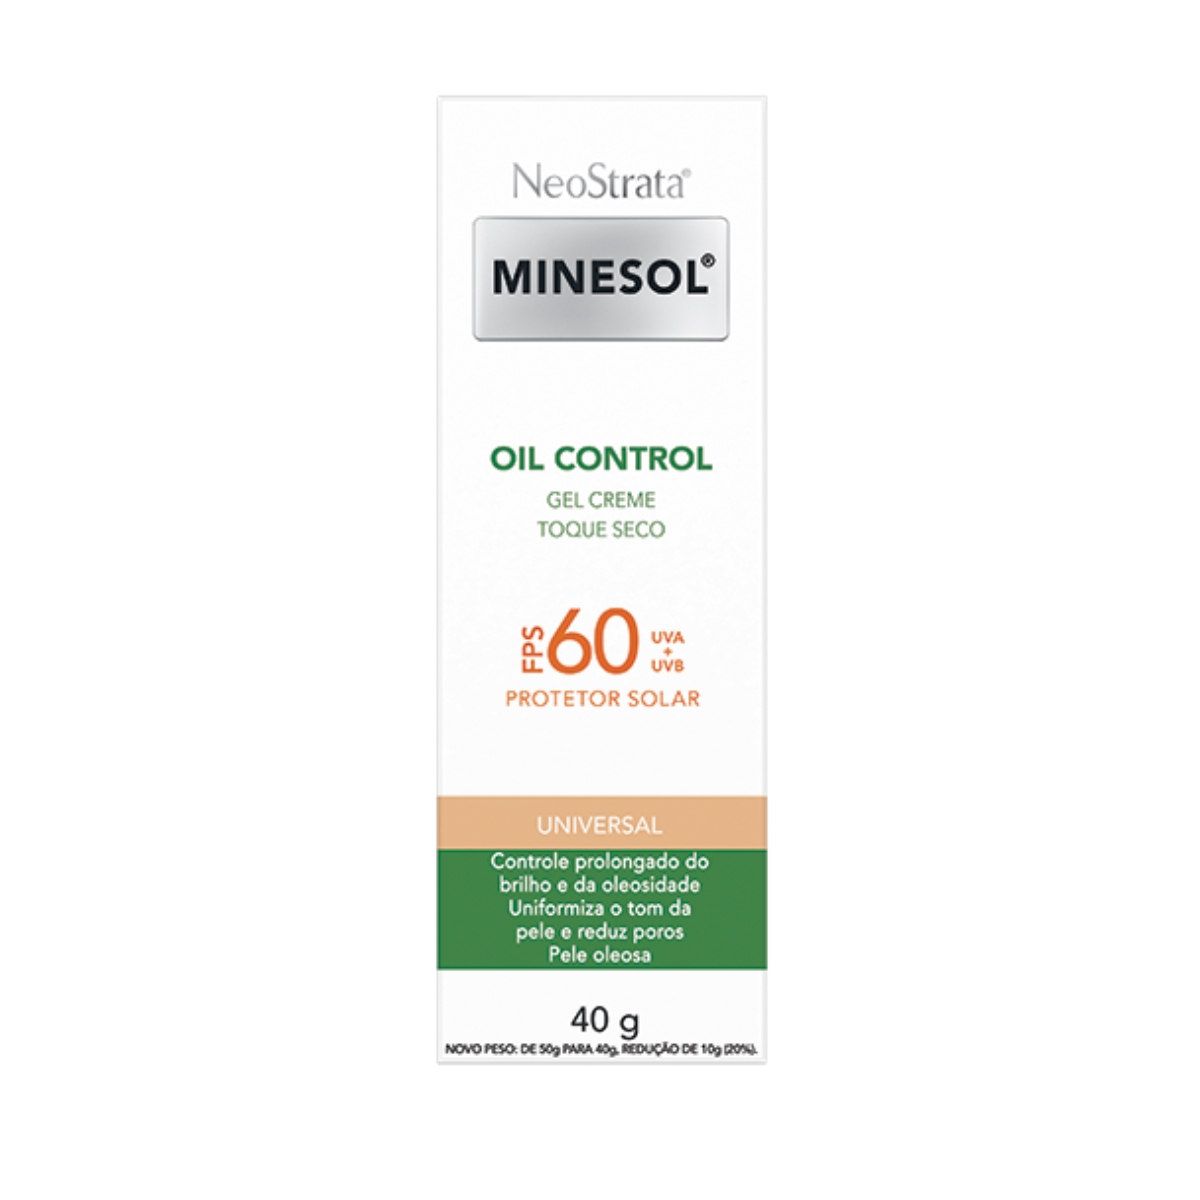 Protetor Solar Gel Creme Facial NeoStrata Minesol Oil Control Toque Seco Cor Universal FPS60 40g